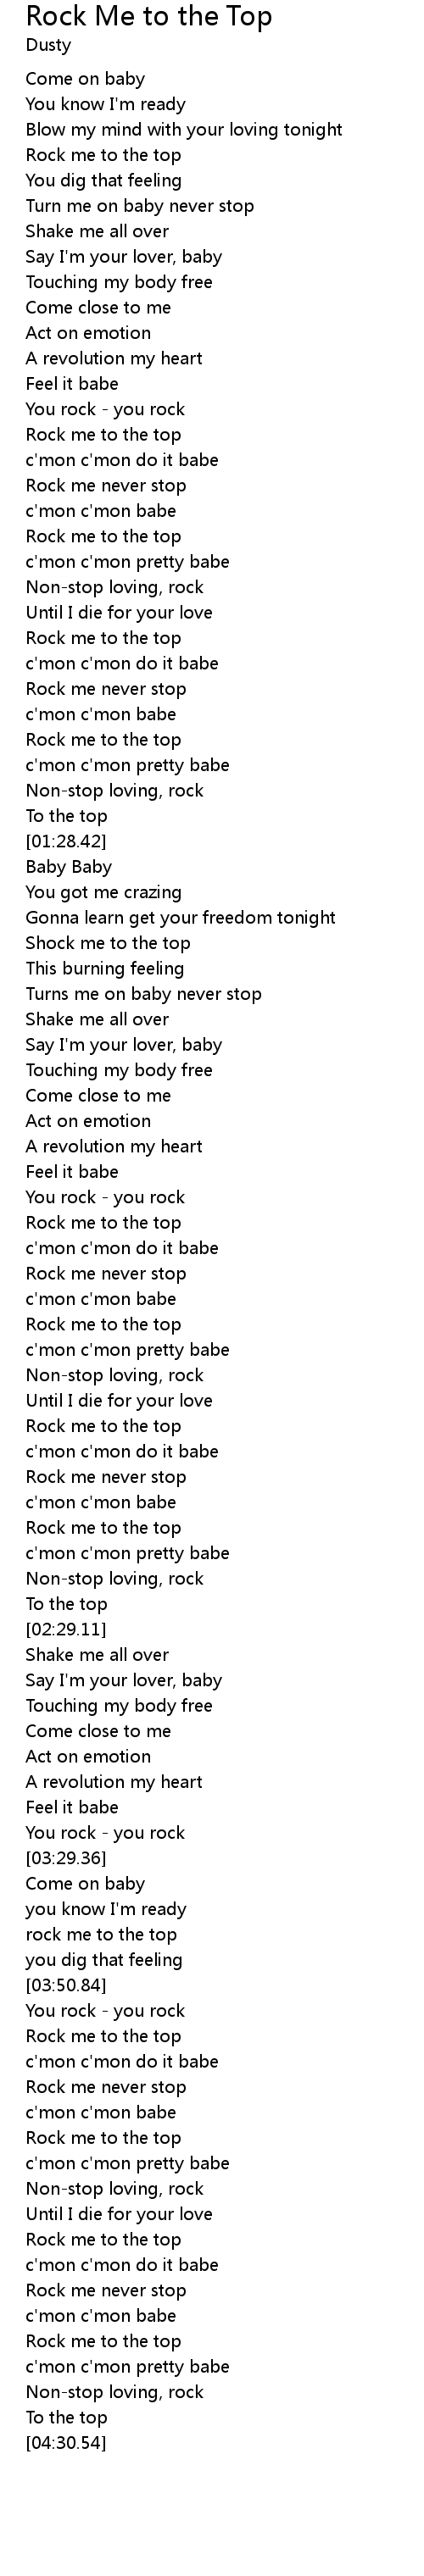 Rock Me To The Top Lyrics Follow Lyrics